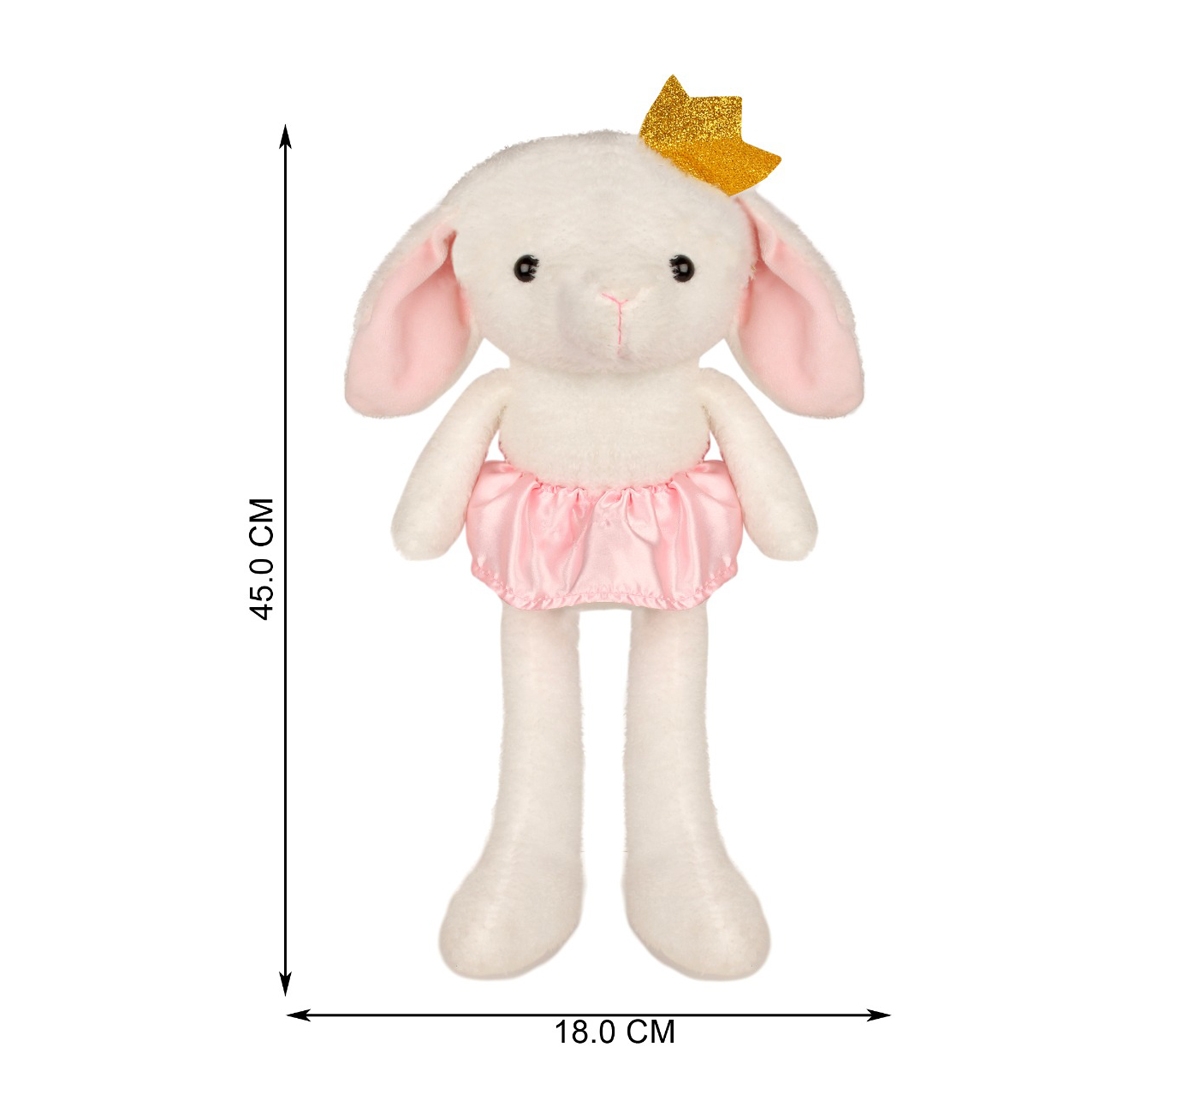 Fuzzbuzz | Fuzzbuzz Rabbit Soft Plush Toy - White - 40Cm Quirky Soft Toys for Kids age 0M+ - 10 Cm (White) 4